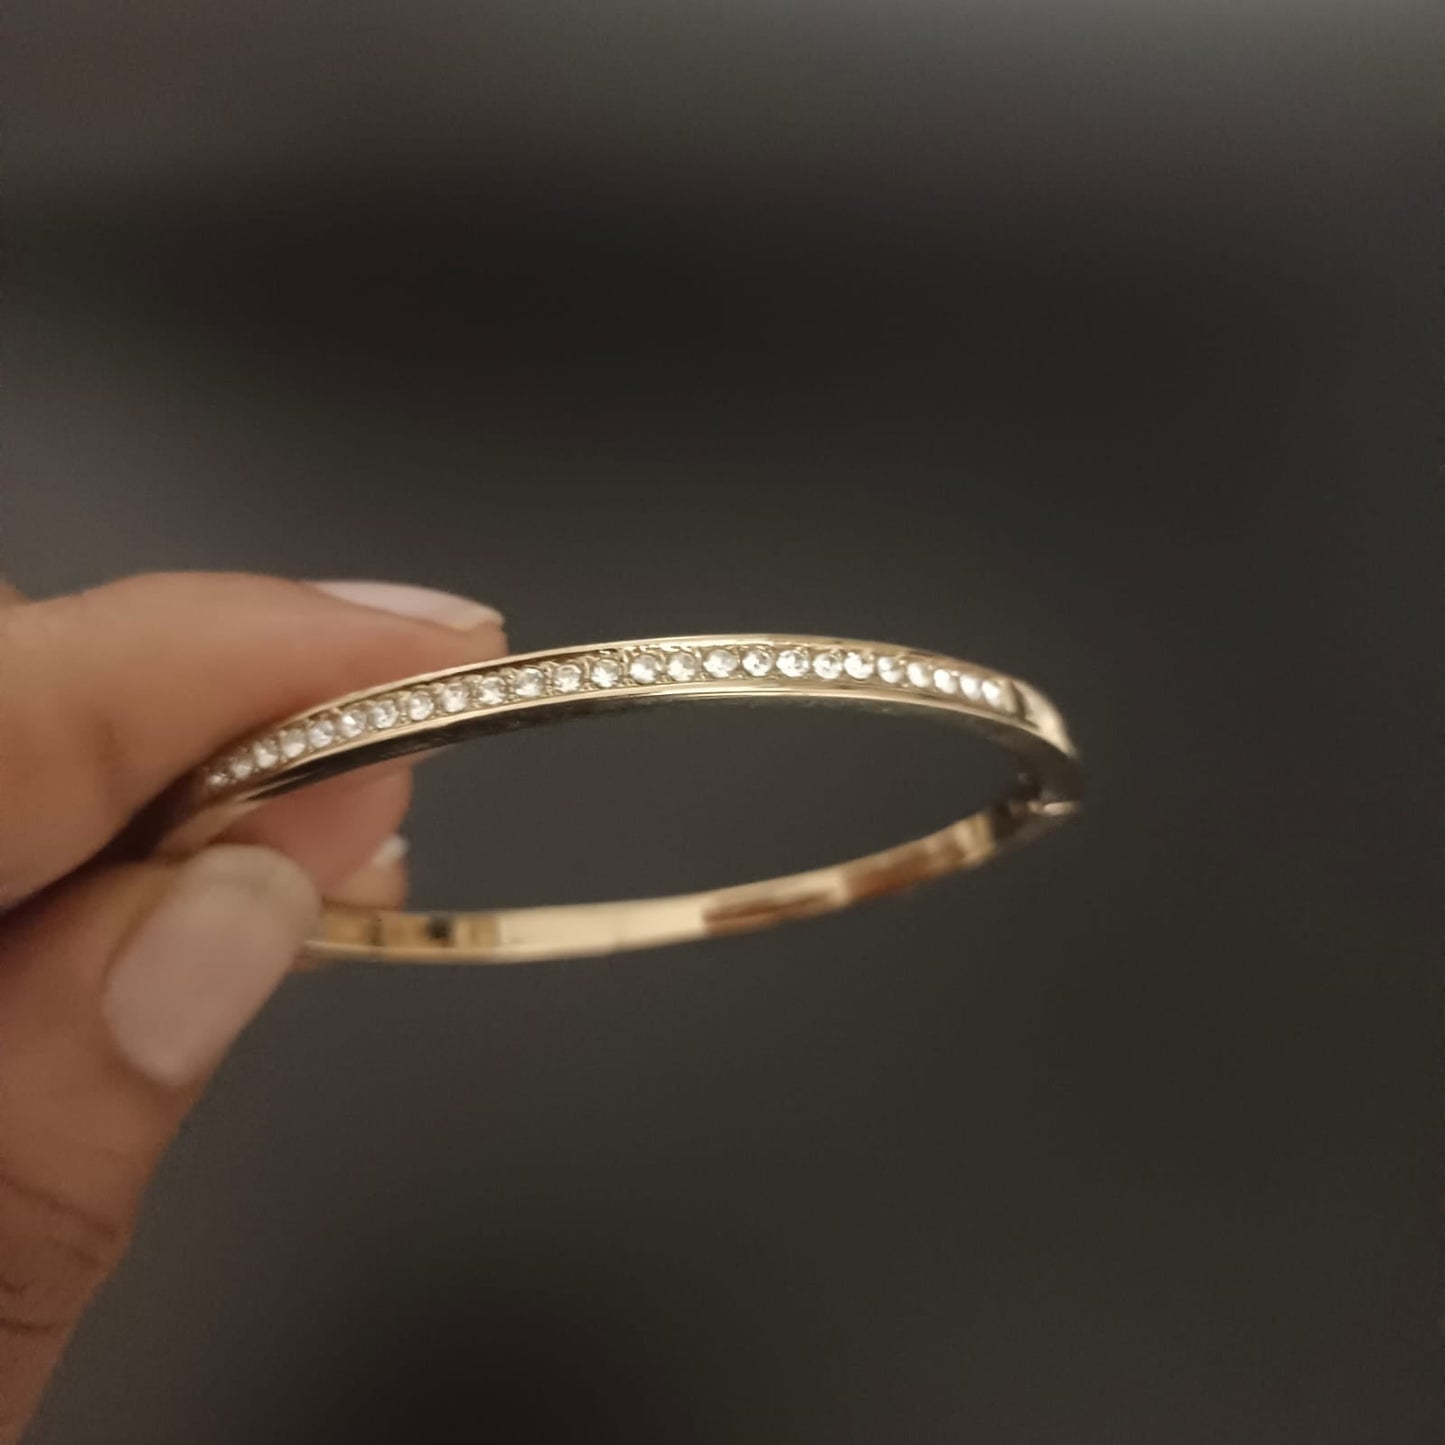 New Diamond Gold Bangle Design Kada Bracelet For Women and Girl-Sunglassesmart